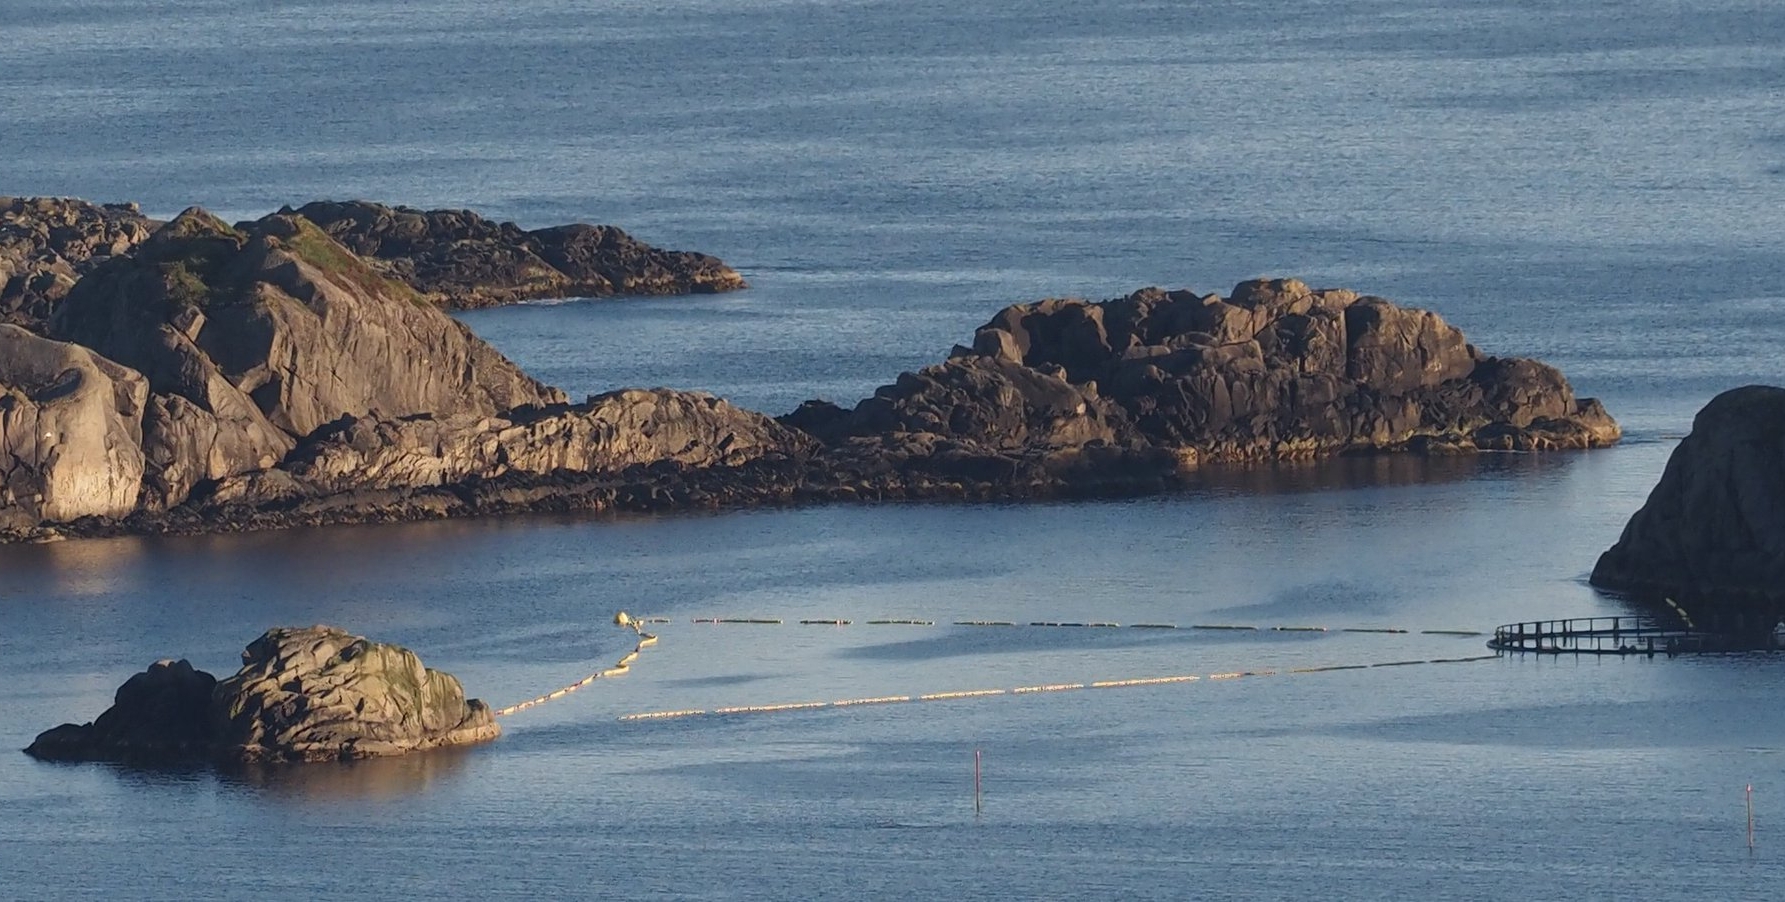 挪威政府计划捕捉年幼小须鲸进行长达六小时的声音测试 50多位科学家同声谴责